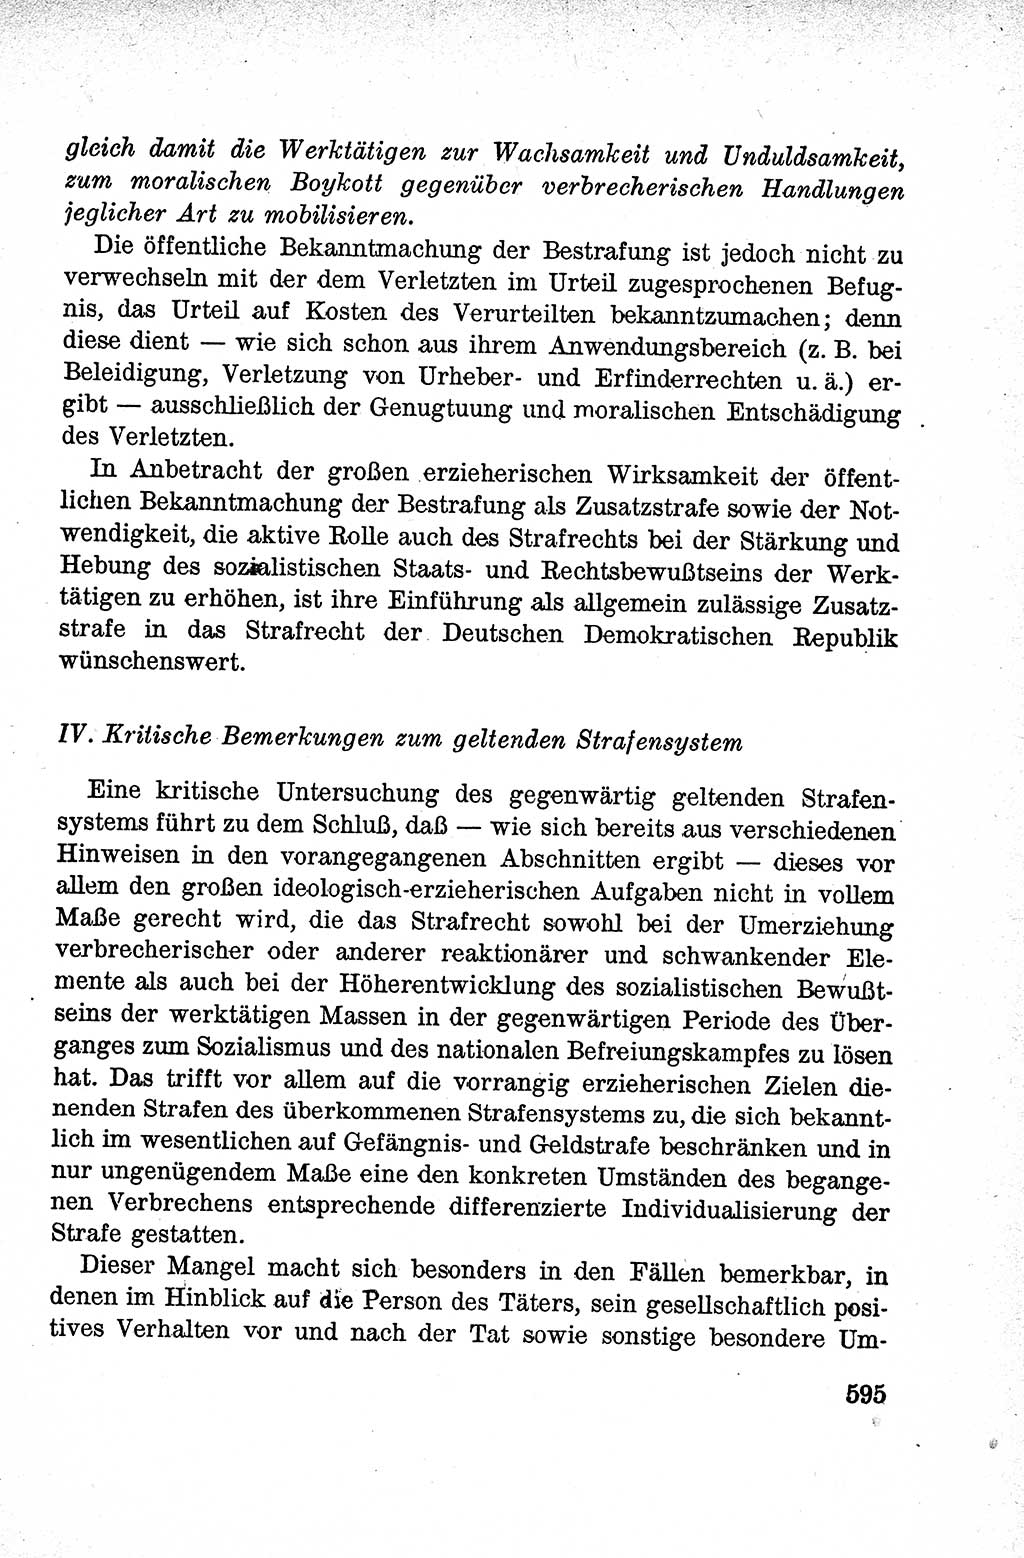 Lehrbuch des Strafrechts der Deutschen Demokratischen Republik (DDR), Allgemeiner Teil 1959, Seite 595 (Lb. Strafr. DDR AT 1959, S. 595)